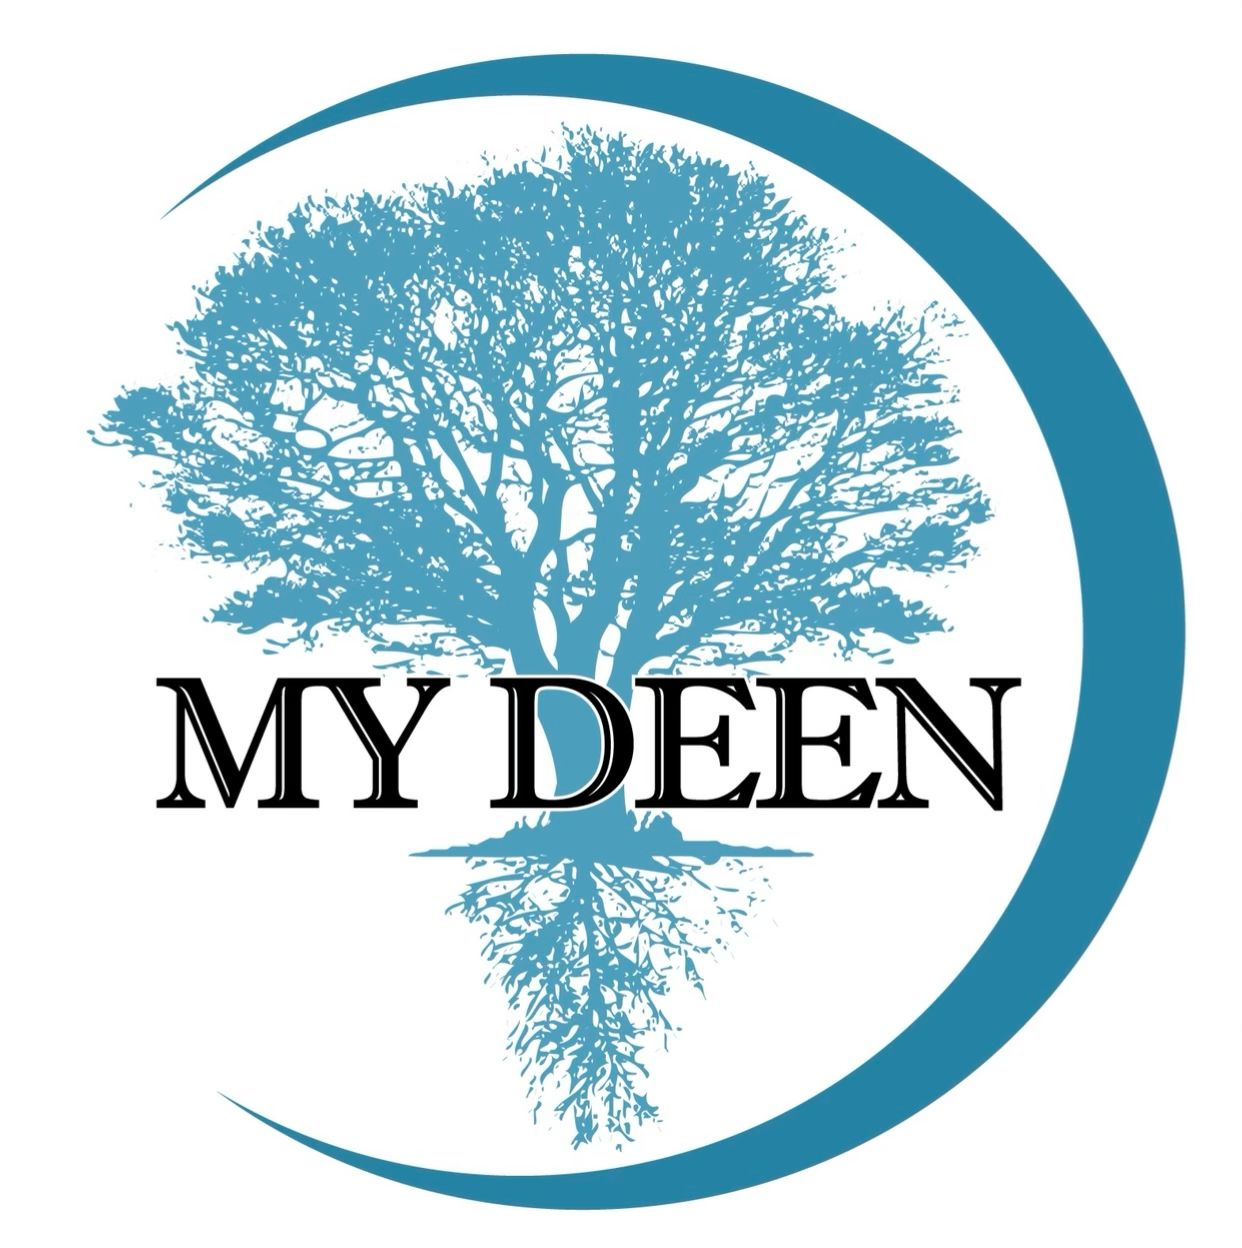 Deen logo